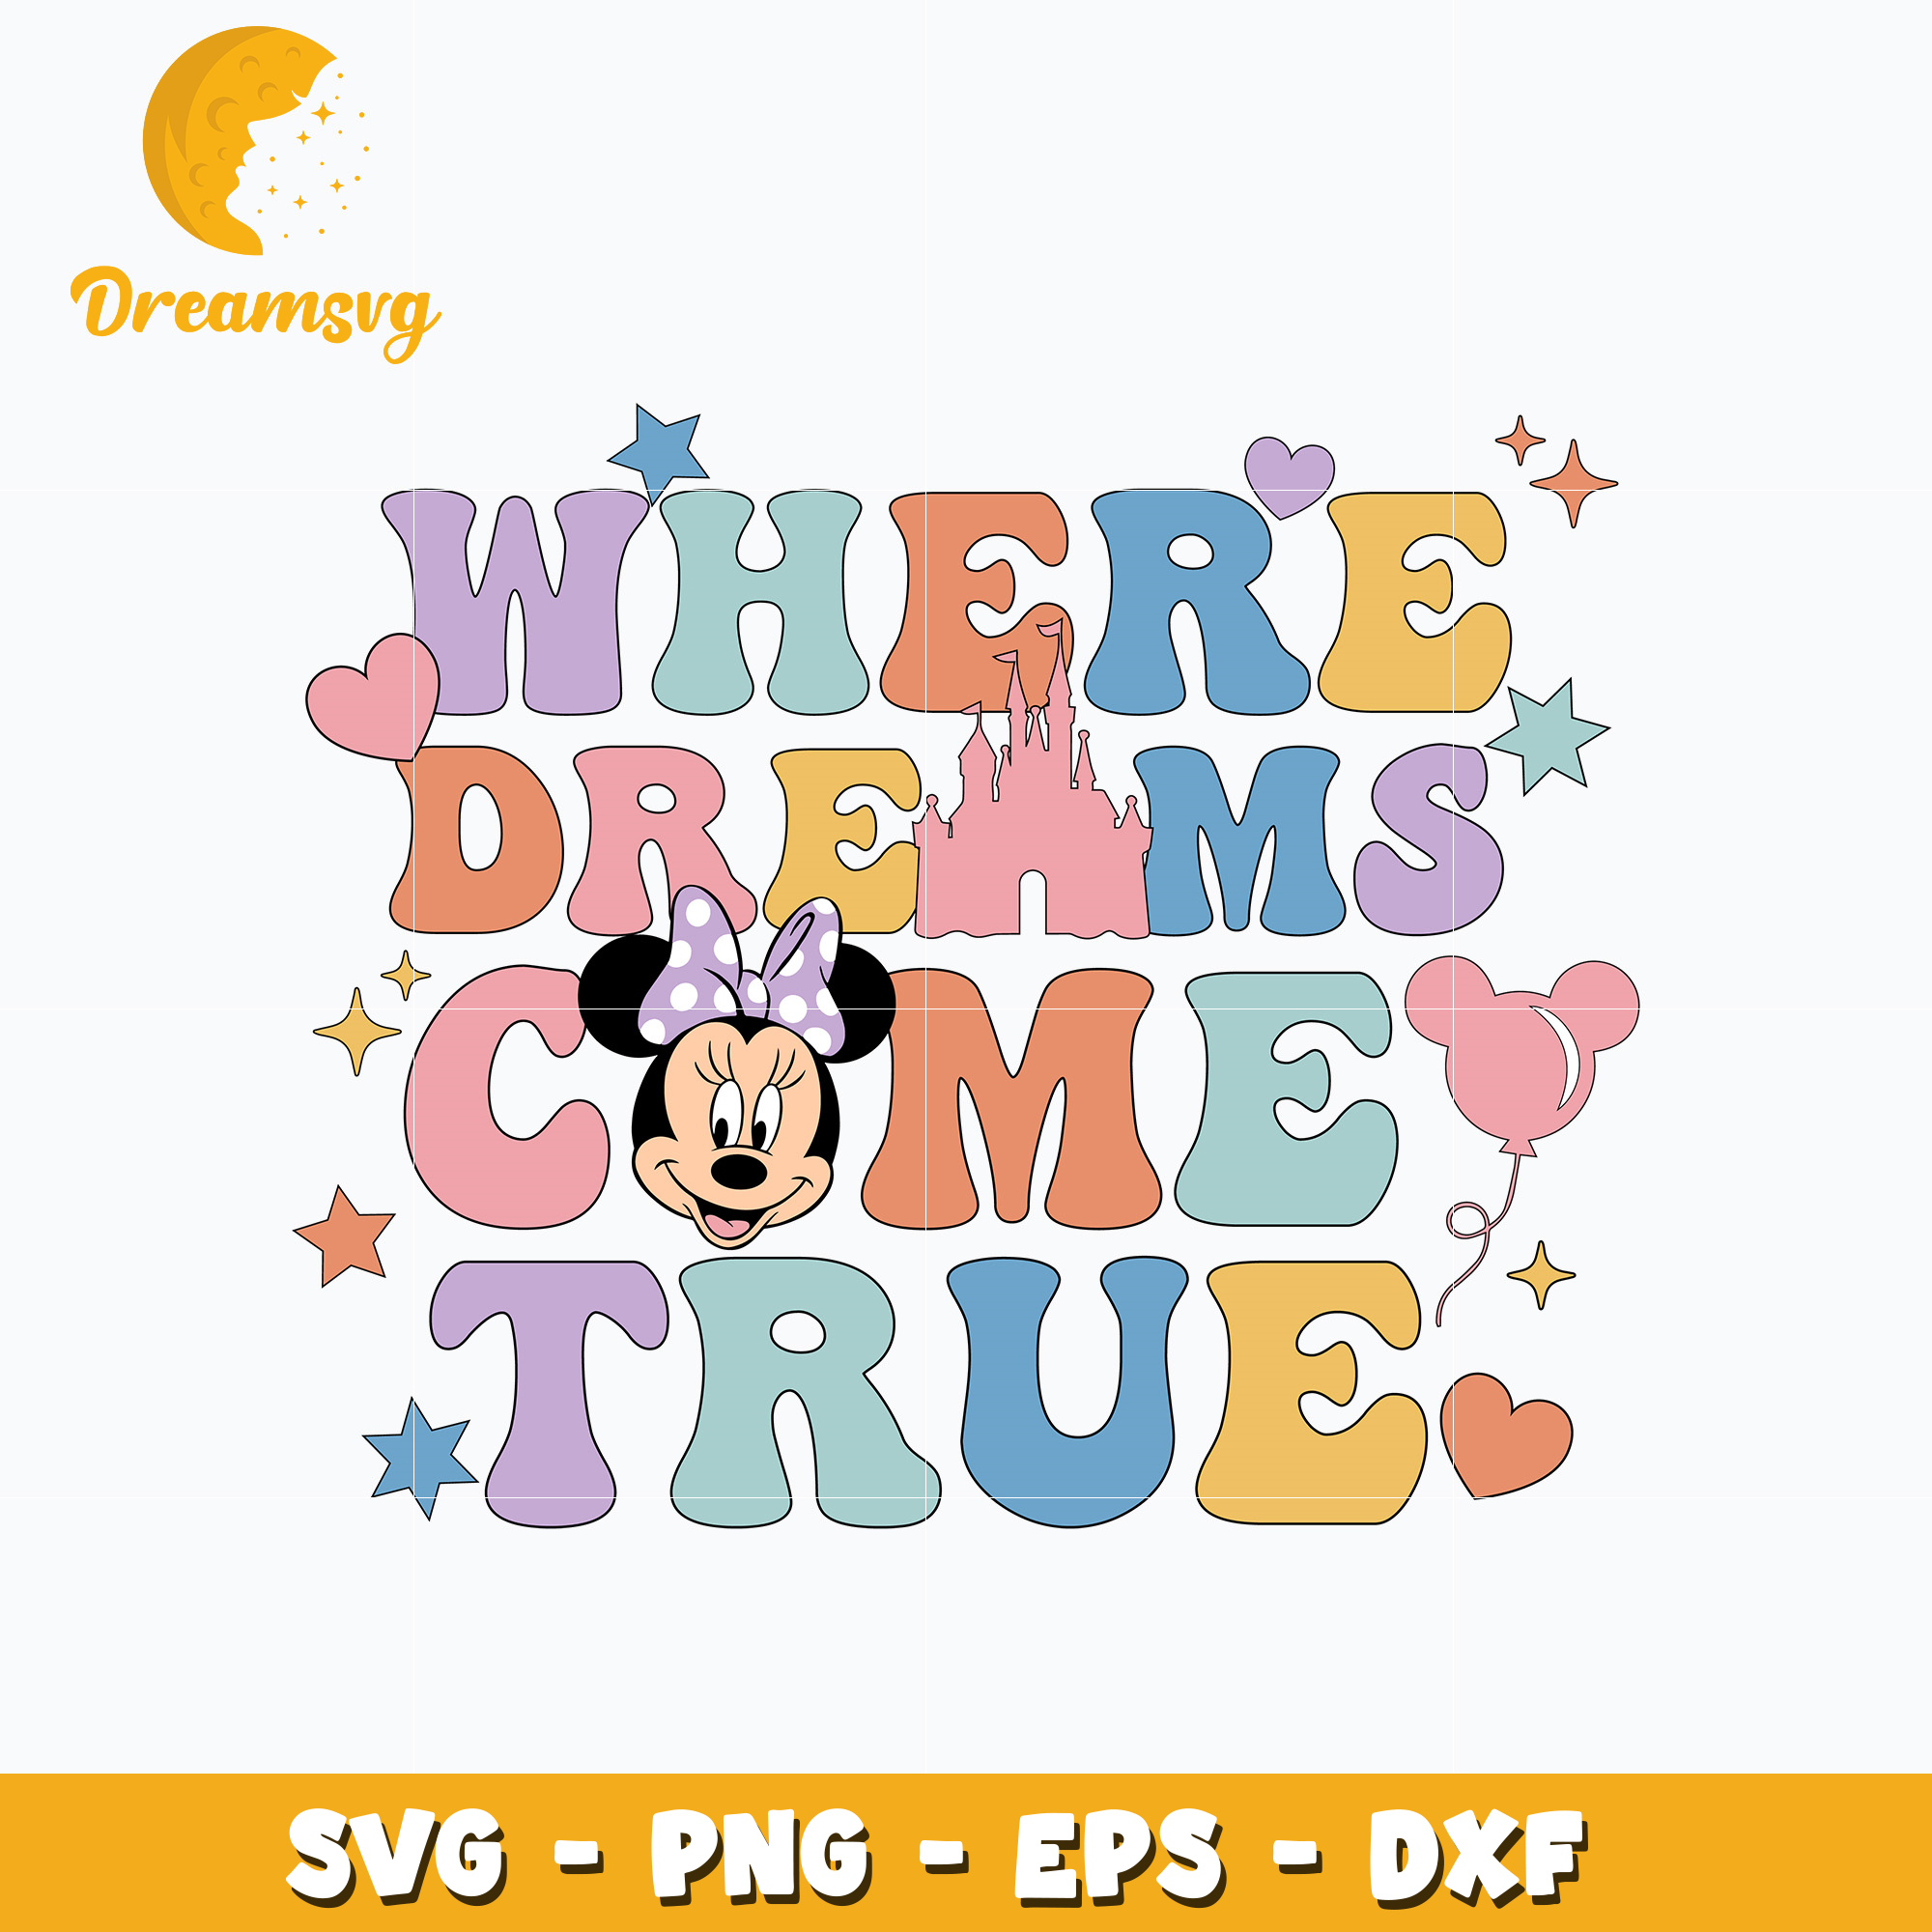 Disney where dreams come true svg – DreamSVG Store